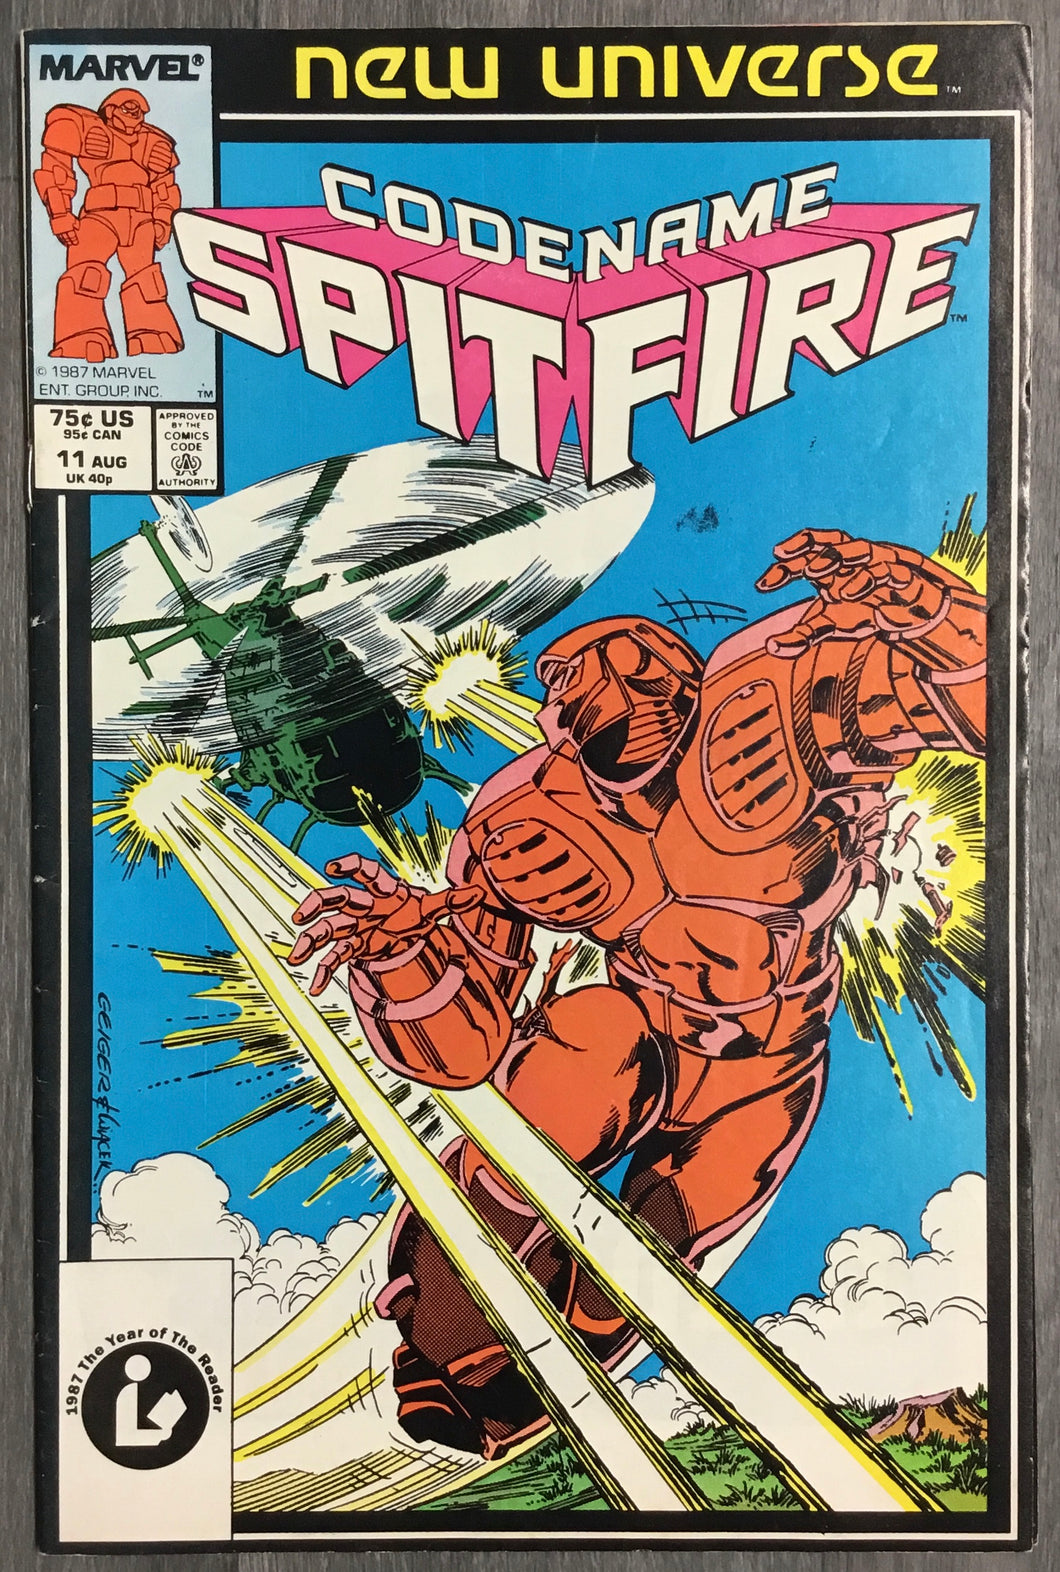 Codename: Spitfire No. #11 1987 Marvel Comics